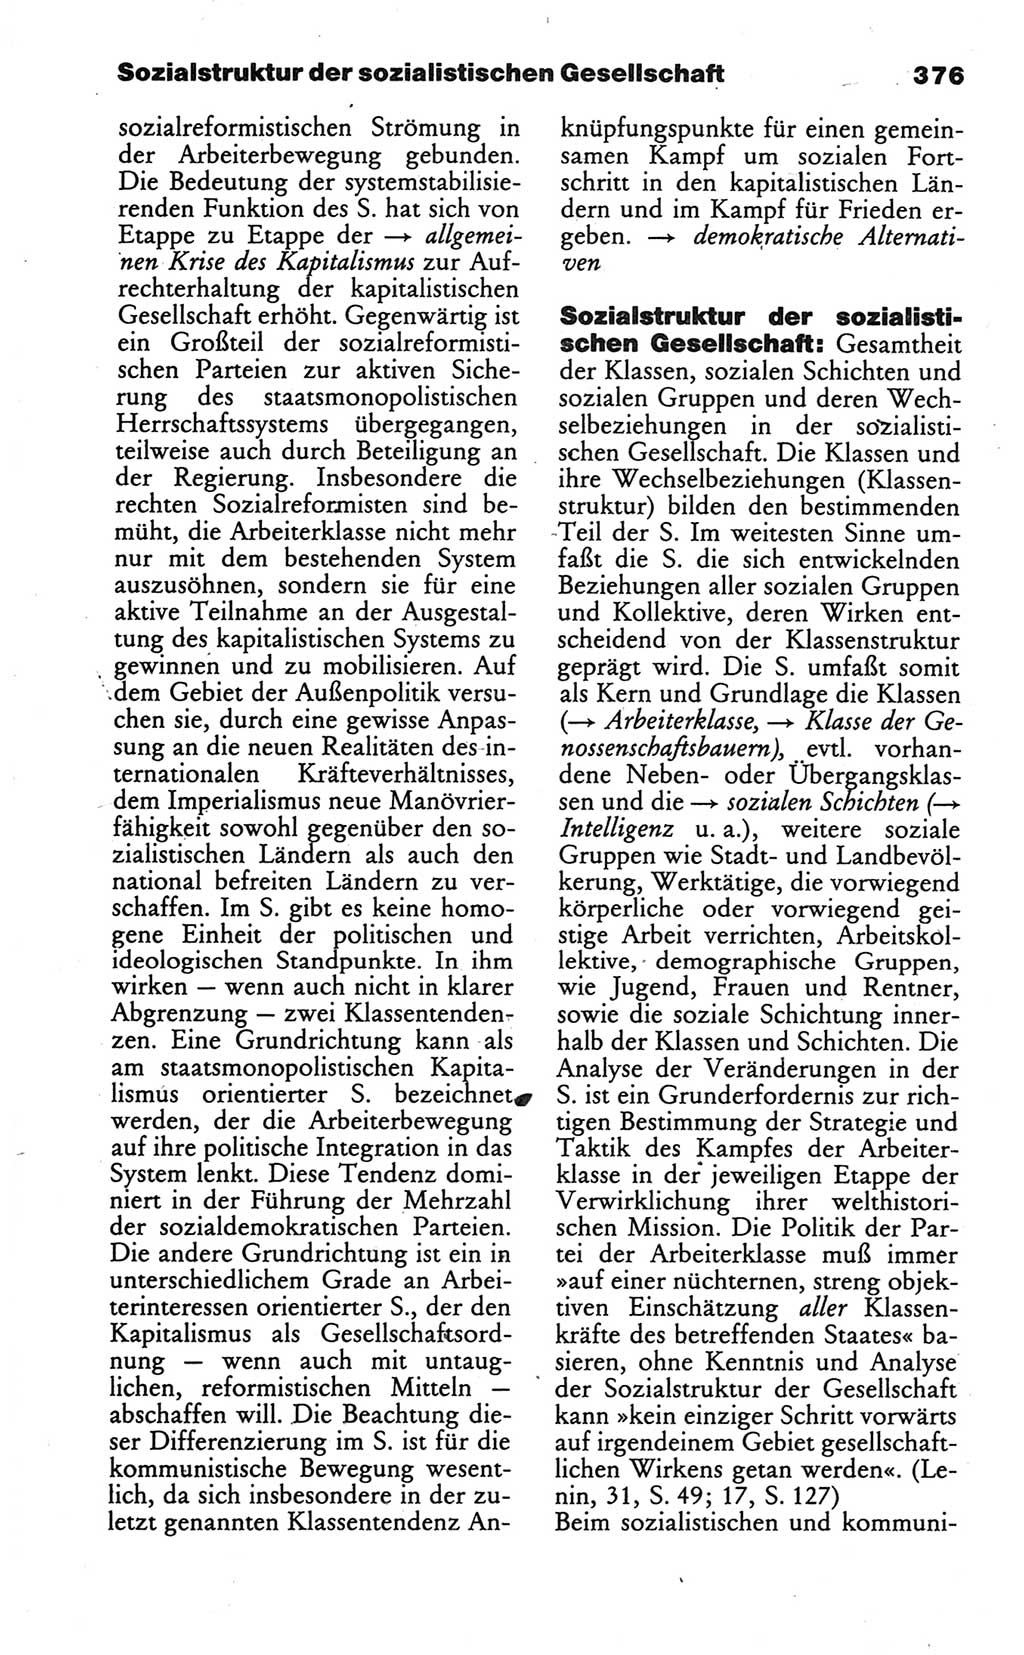 Wörterbuch des wissenschaftlichen Kommunismus [Deutsche Demokratische Republik (DDR)] 1986, Seite 376 (Wb. wiss. Komm. DDR 1986, S. 376)